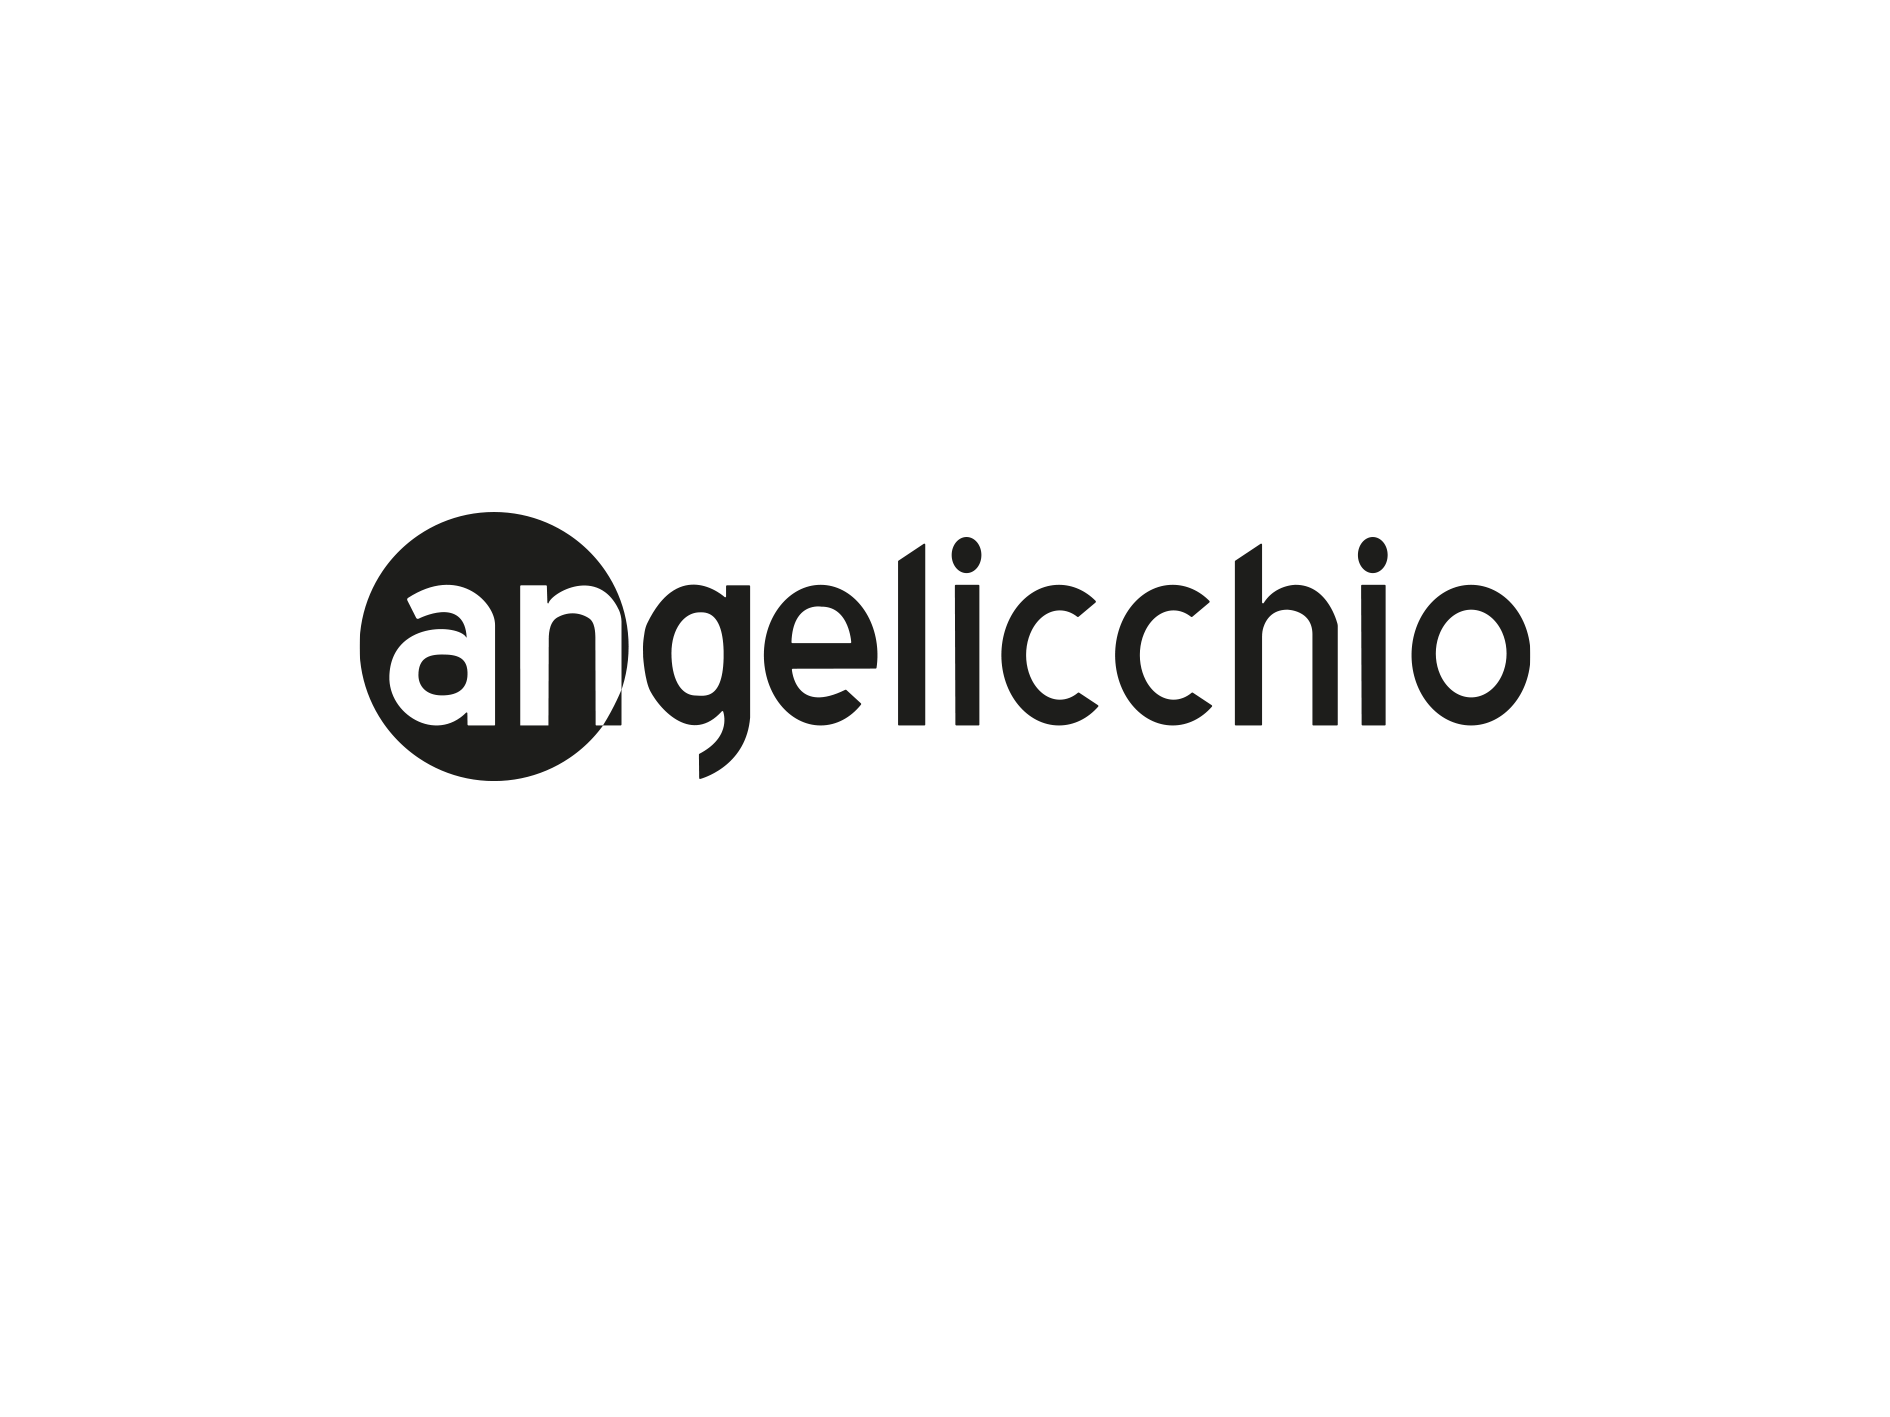 ANGELICCHIO (1)